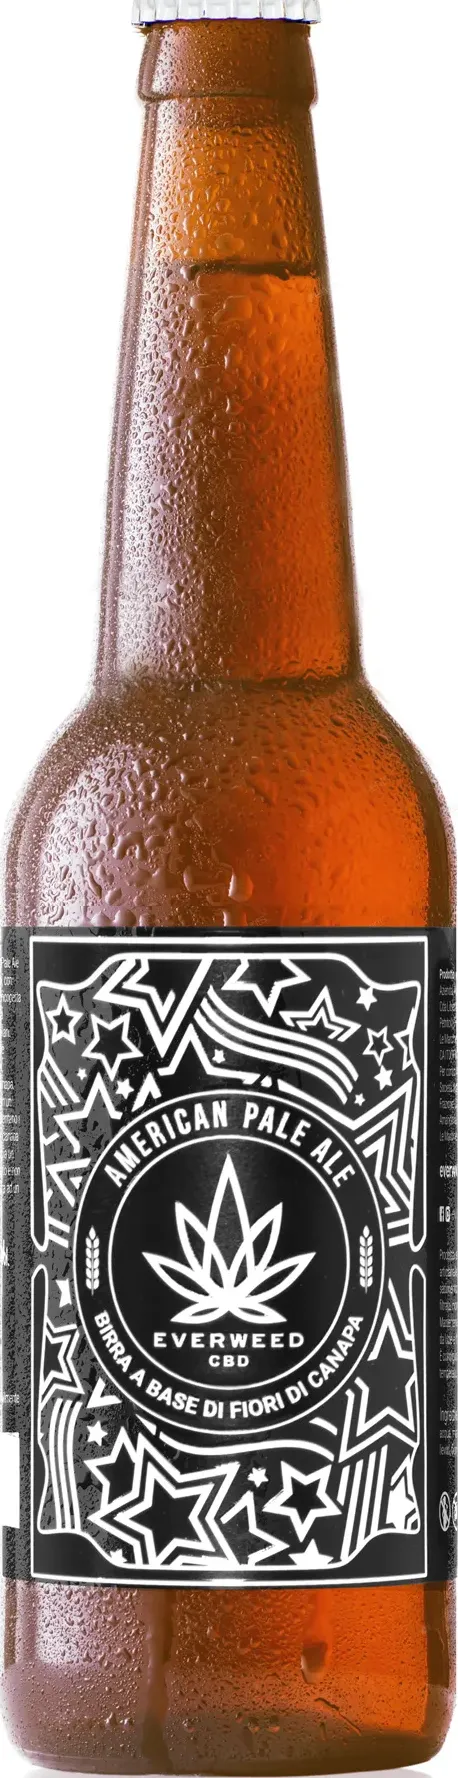 Birra ai fiori di canapa american pale ale - cartone 6 bottiglie